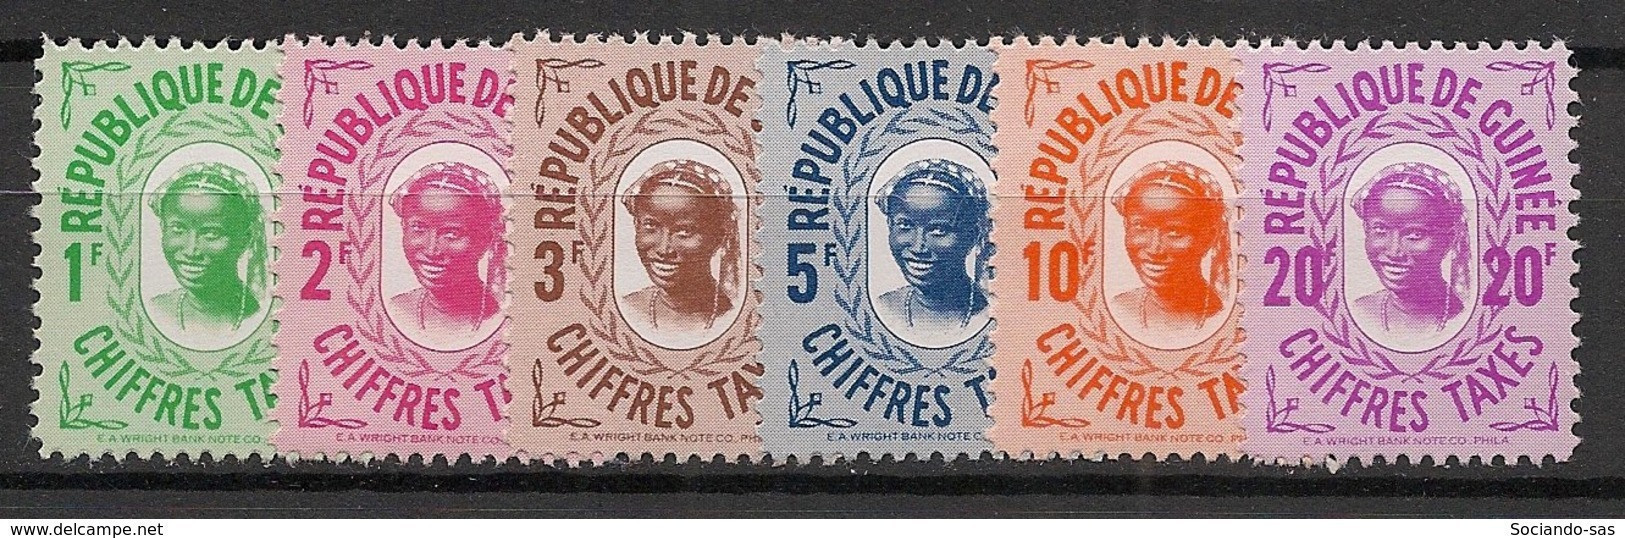 GUINEE - 1959 - Taxe TT N°YT. 7 à 12 - Série Complète - Neuf Luxe ** / MNH / Postfrisch - Guinée (1958-...)